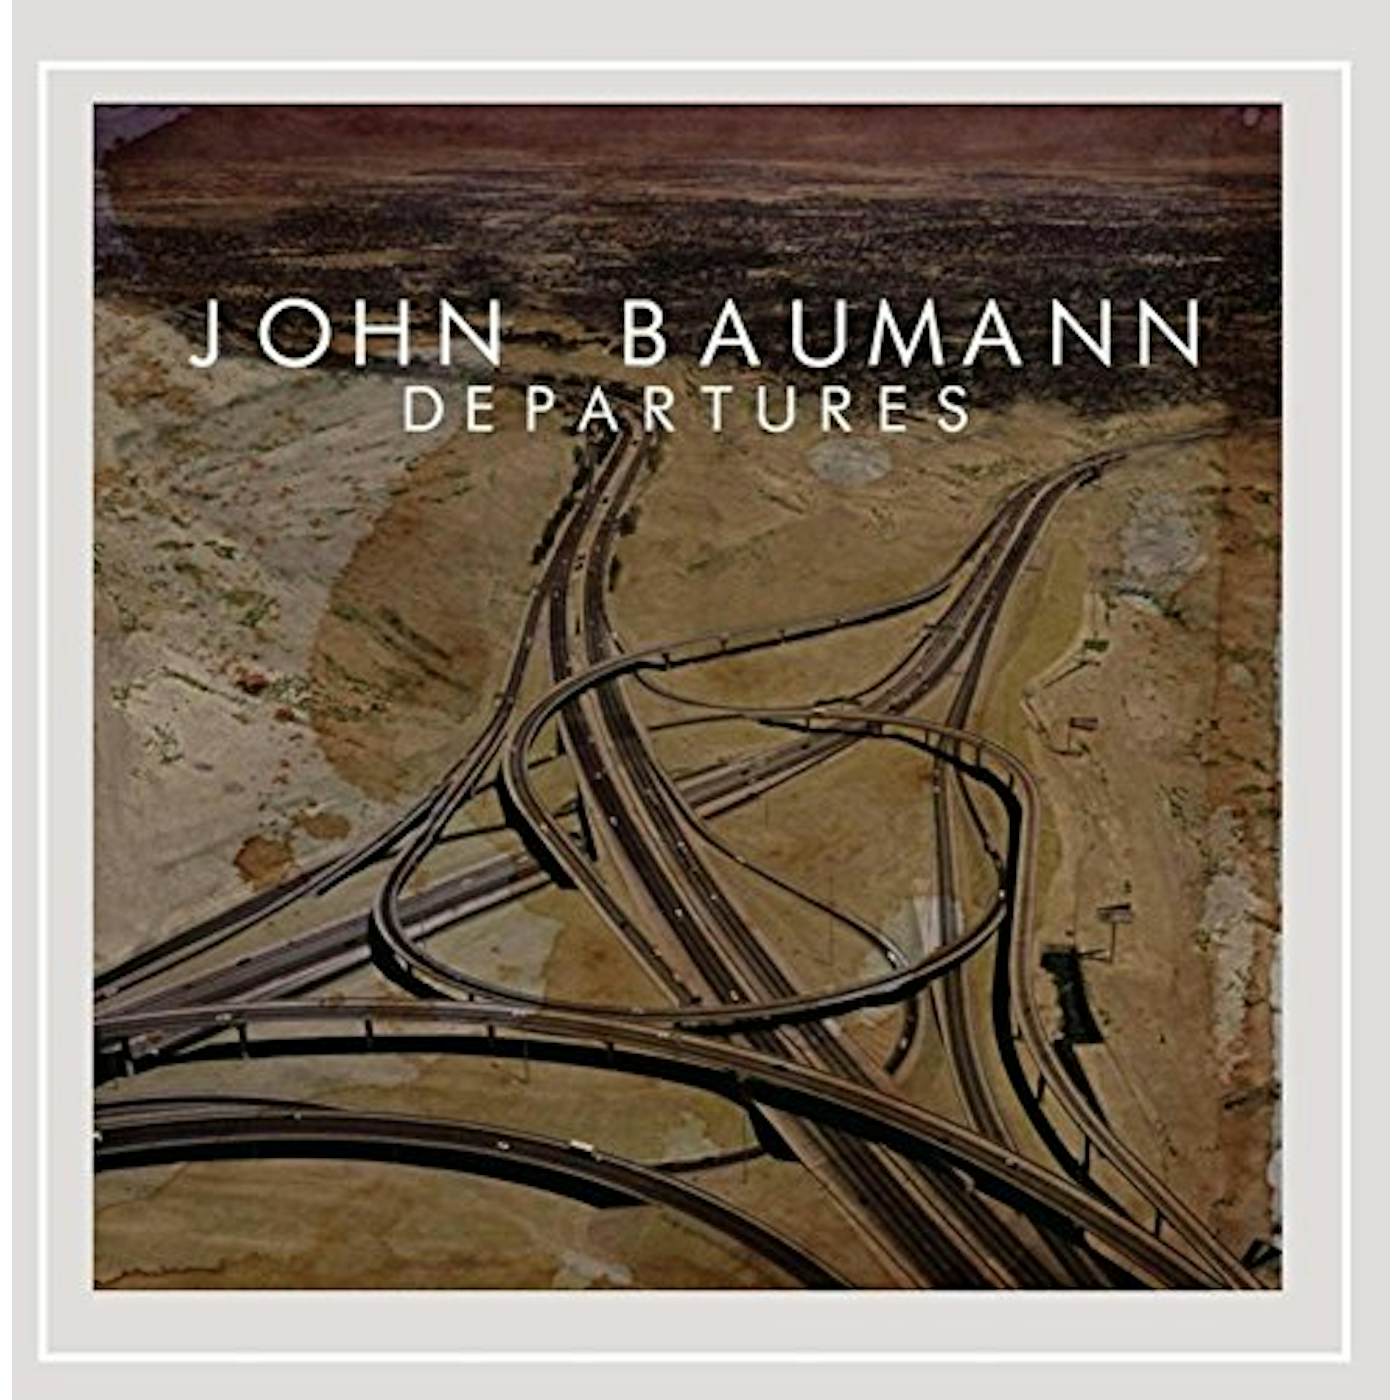 John Baumann DEPARTURES CD